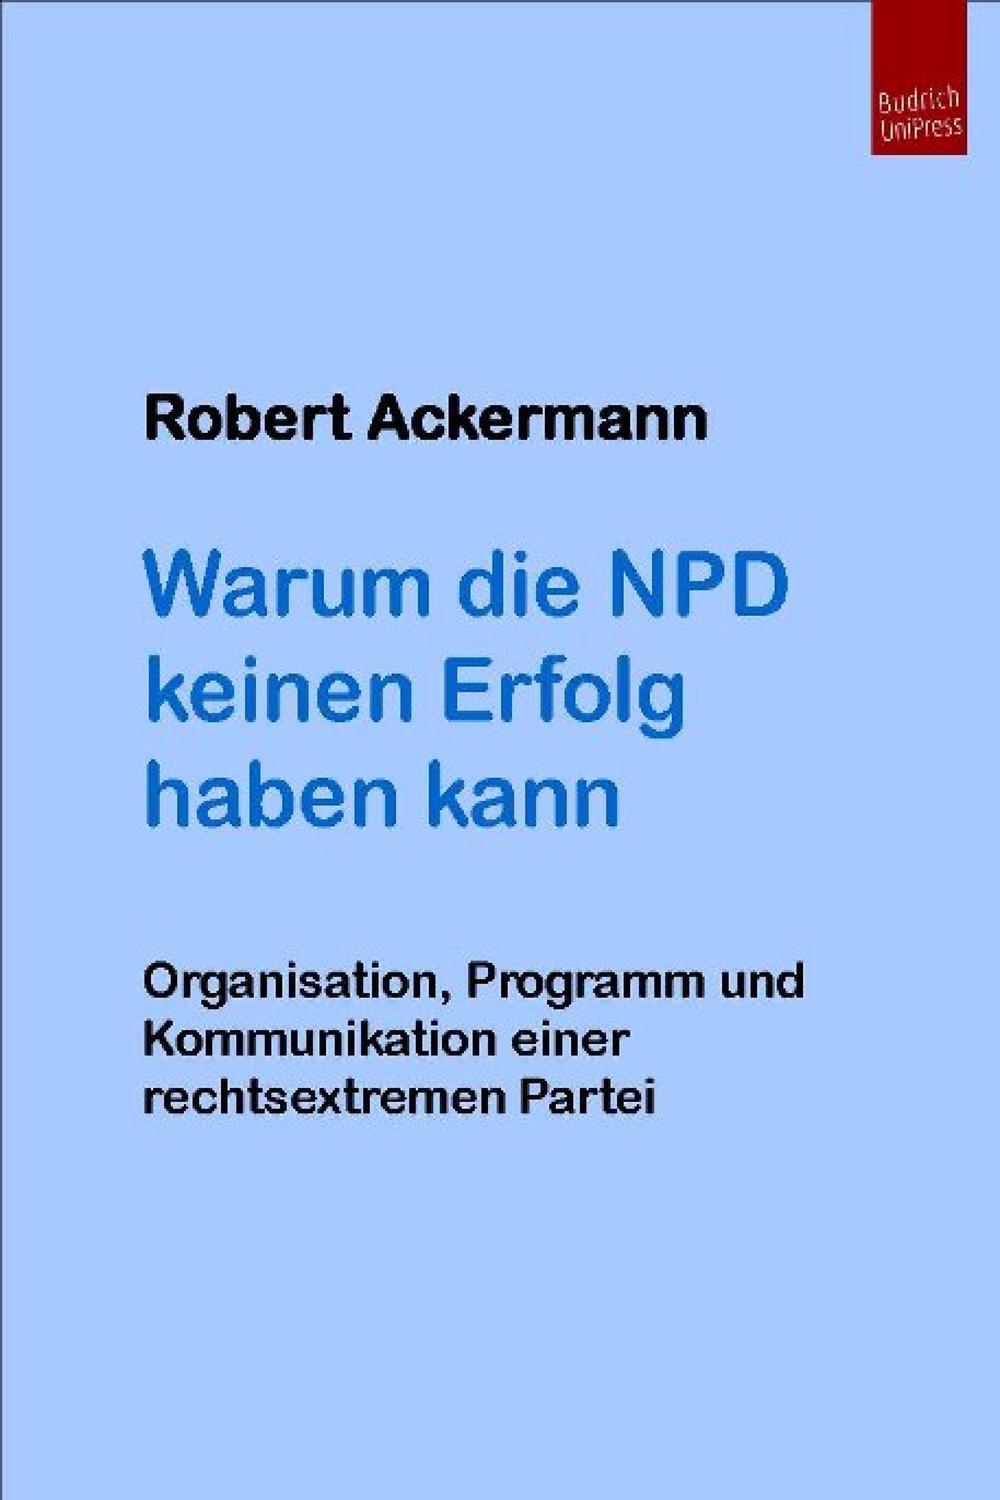 Warum die NPD keinen Erfolg haben kann - Robert Ackermann